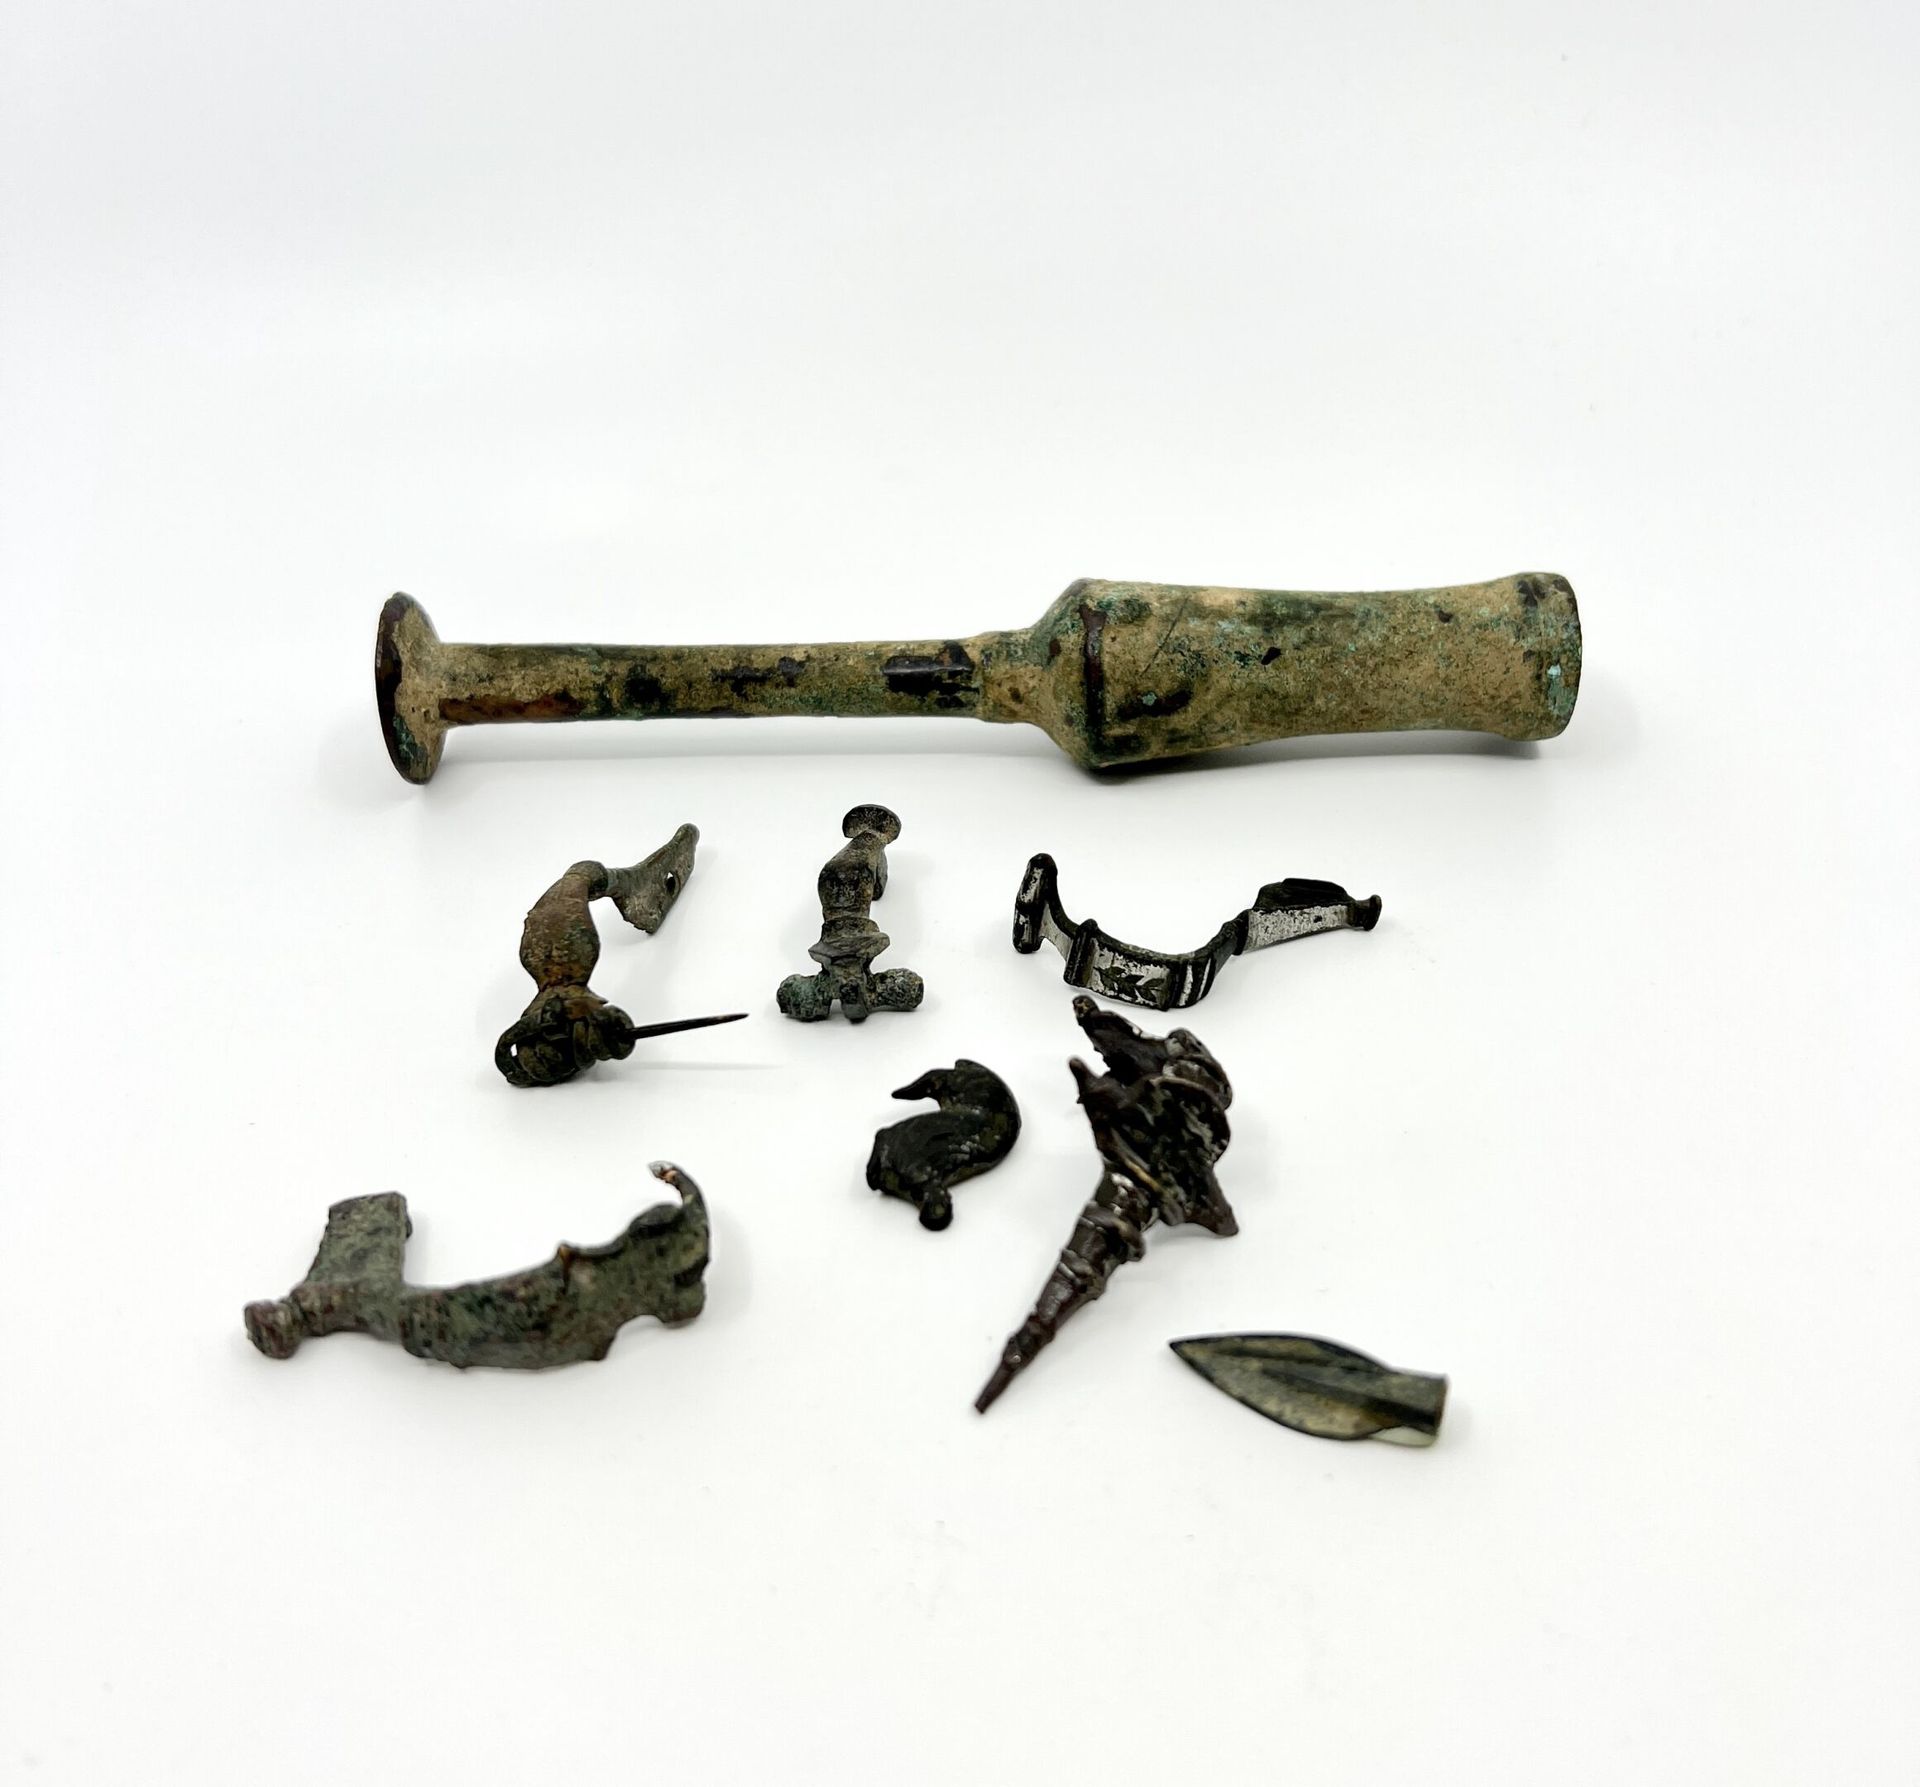 Null 拍品包括六个模制的弓形纤维，一个斯基泰式的箭头和一个带针的假神像瓶。
青铜，带绿色铜锈。缺少倒钩(用于纤维素)
伊朗，铁器时代和帕提亚时期，以及3世纪&hellip;